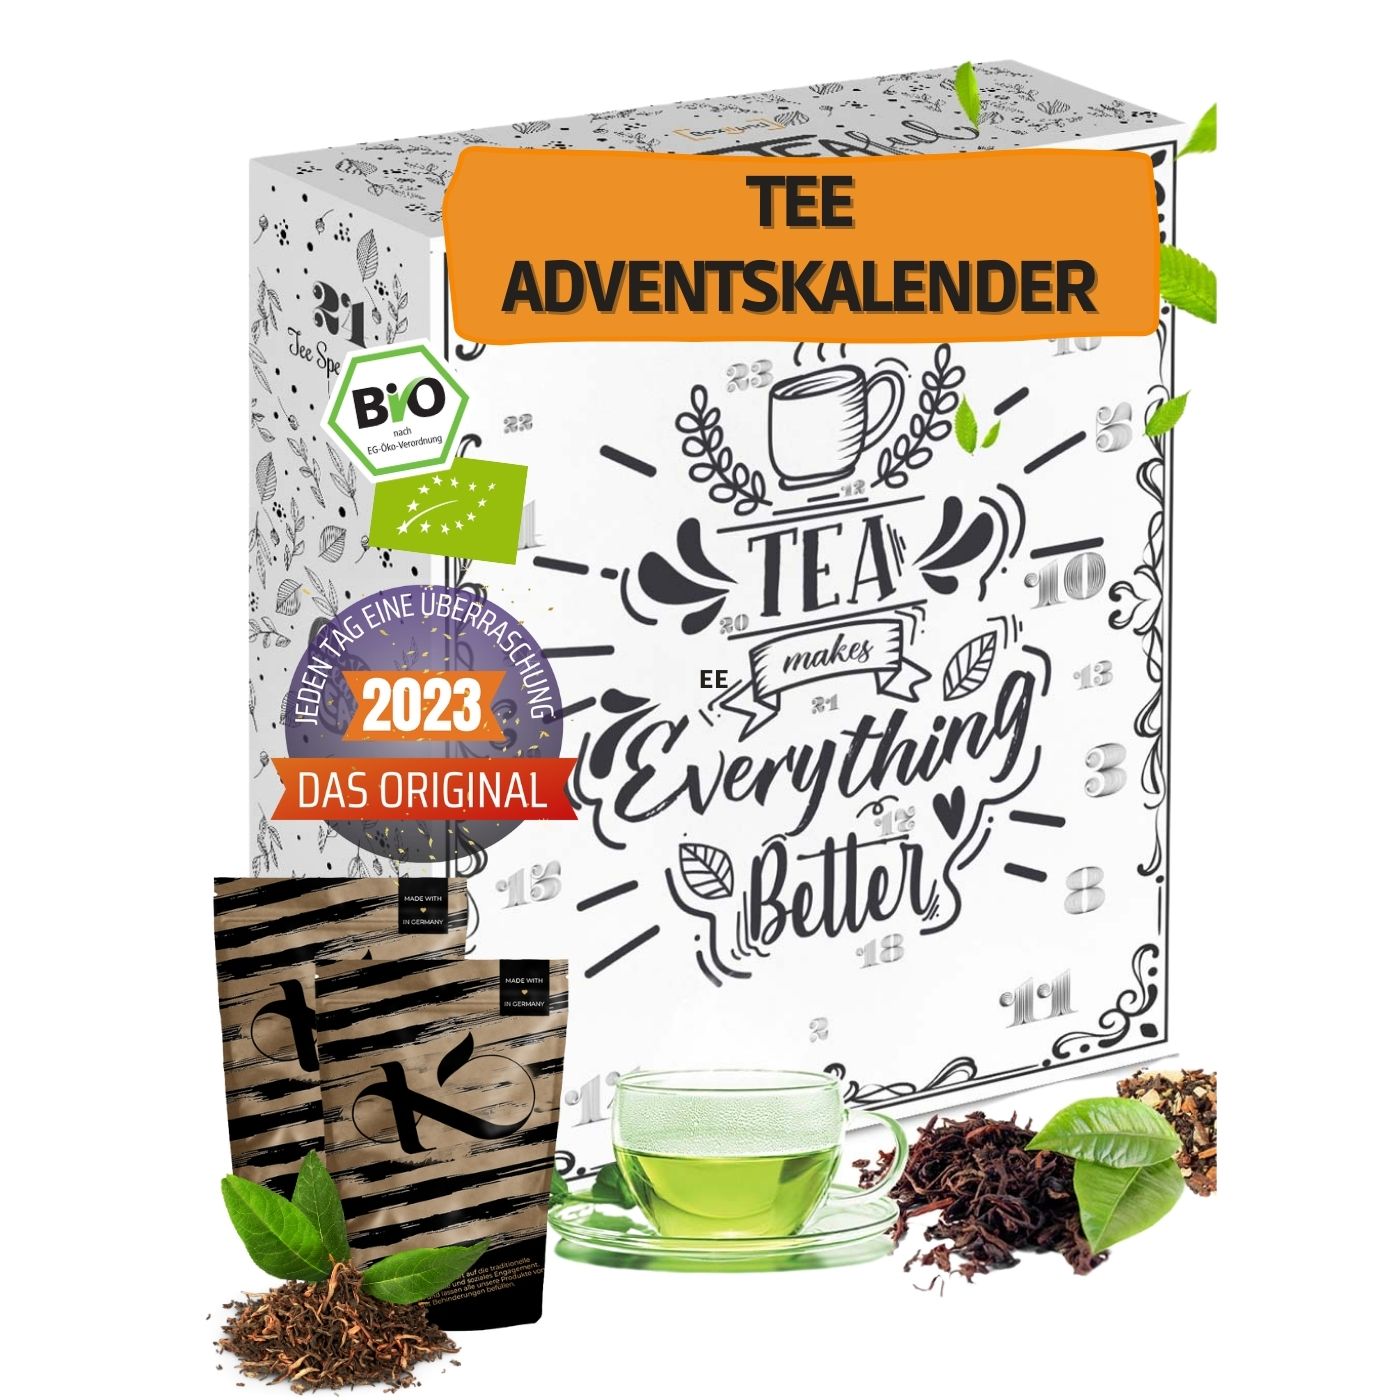 Tee Adventskalender 2023 in BIO-Qualität feinste Teesorten für die Adventszeit I Tee Weihnachtskalender 2023